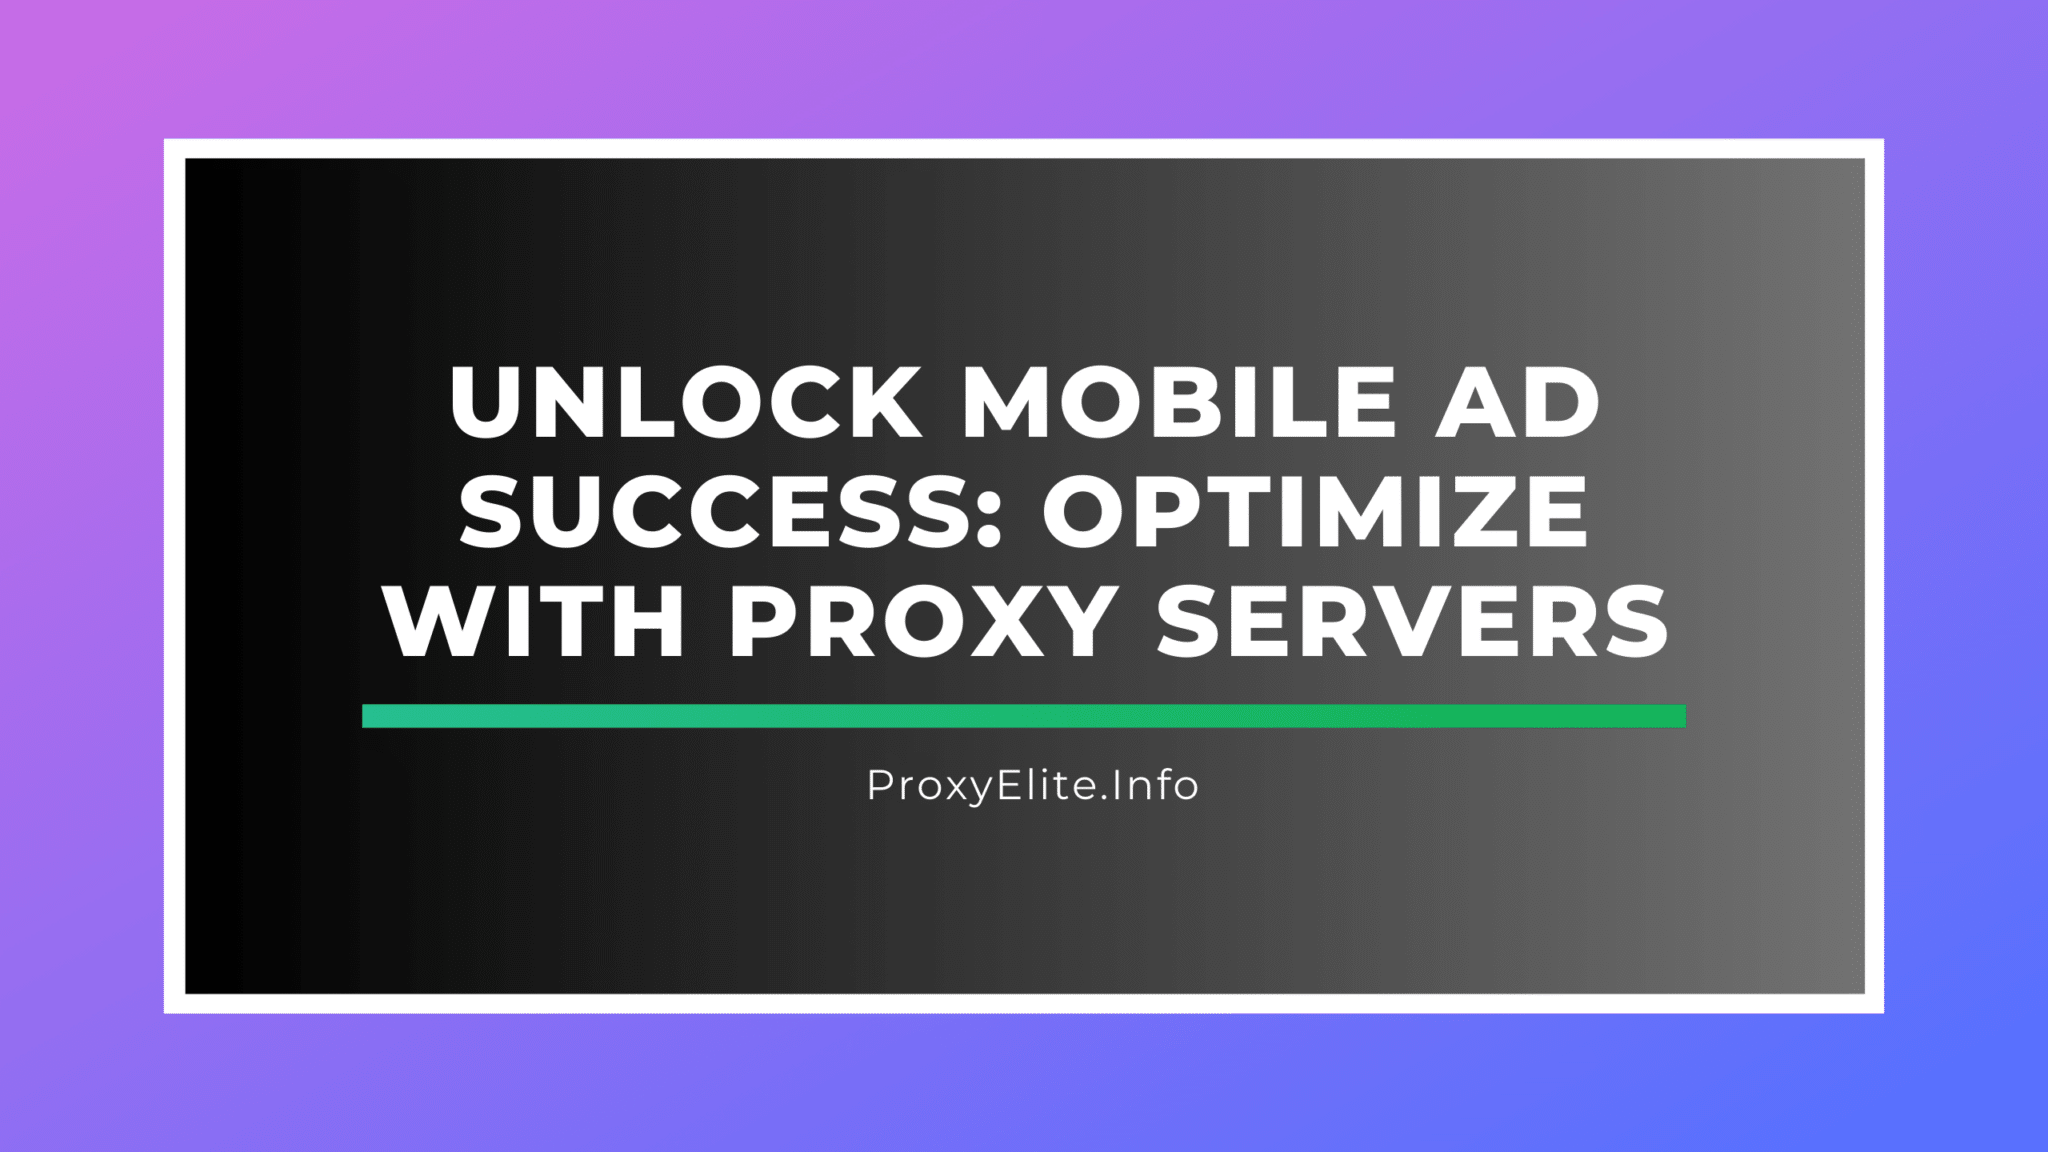 Desbloquee el éxito de la publicidad móvil: optimice con servidores proxy